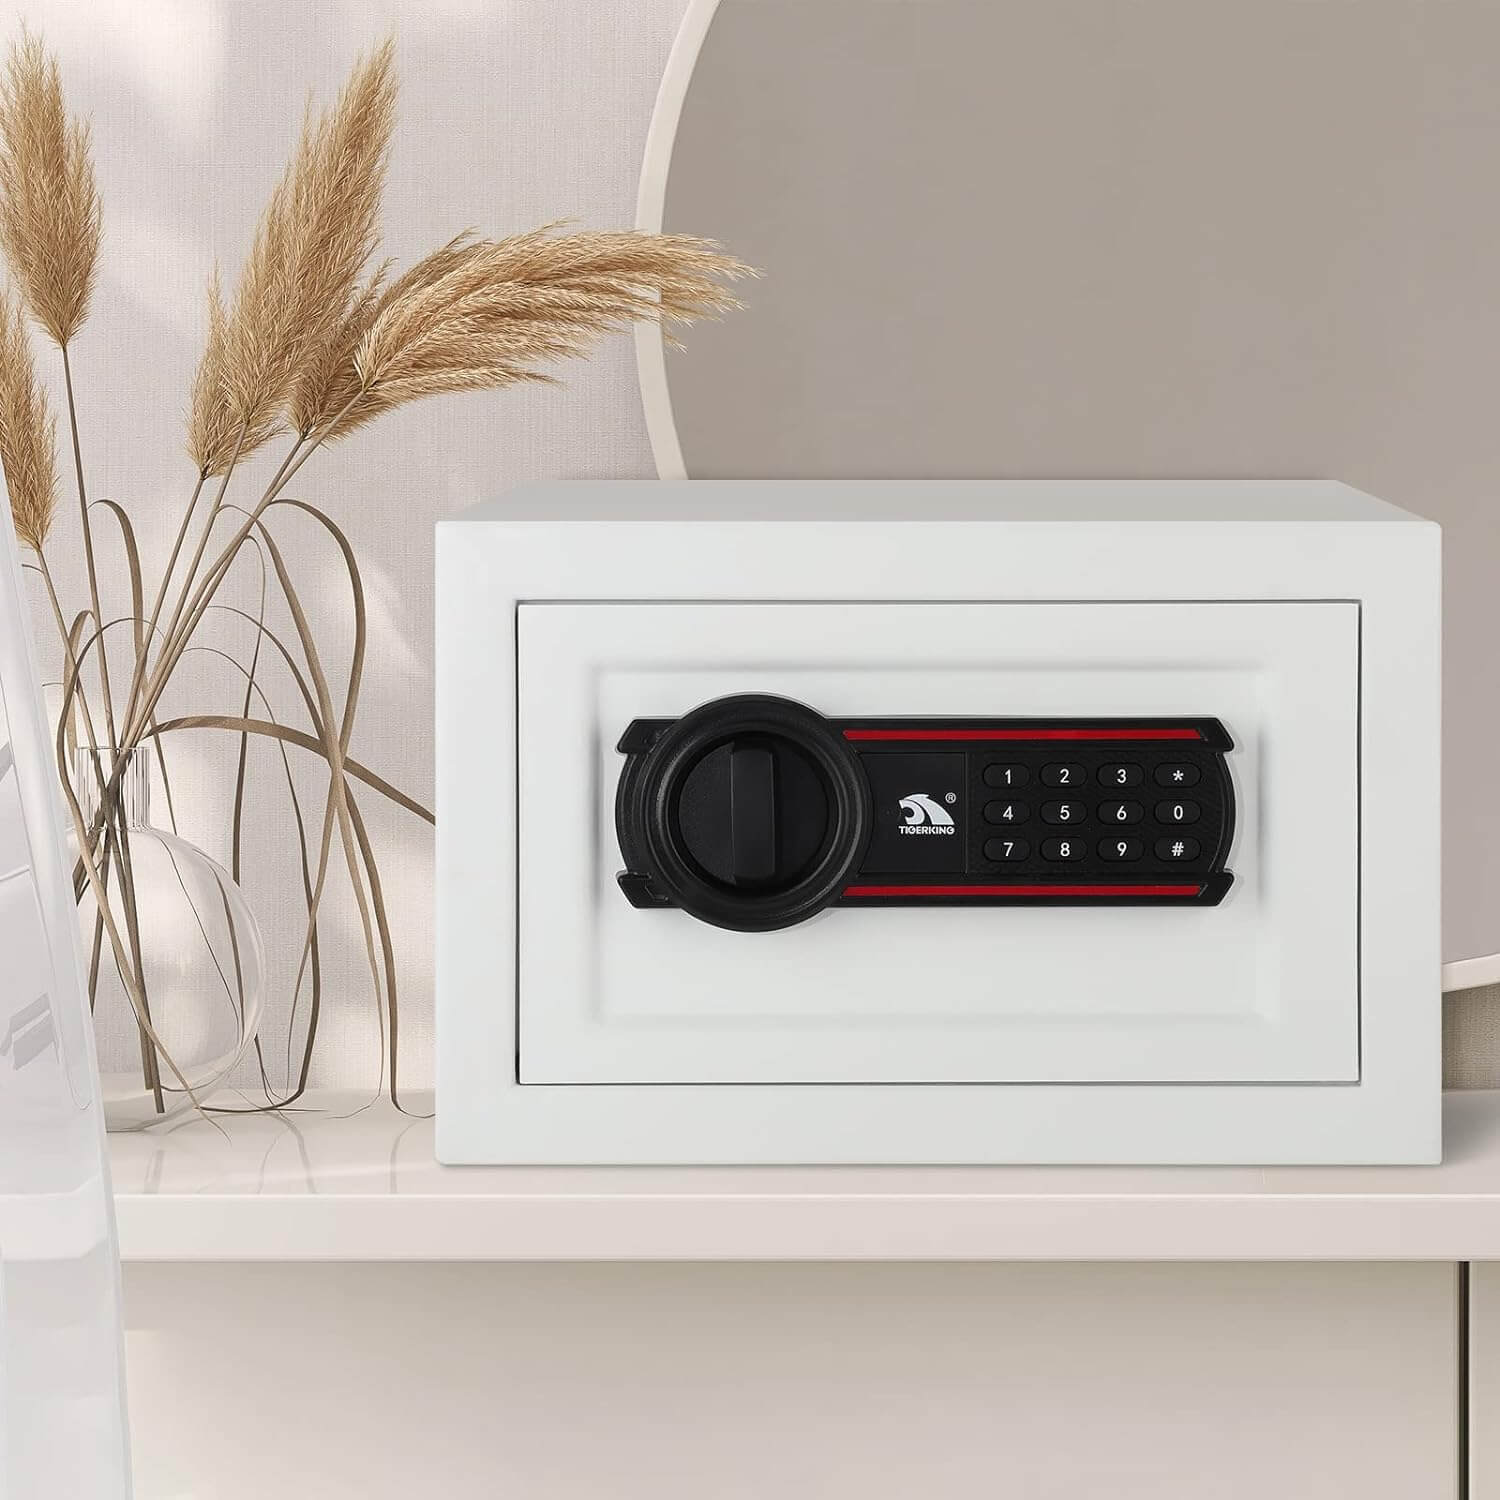 TIGERKING Digital Keypad Safe Box, Small Safe Money Safe Lock Box Cabinet Safes, Solid Alloy Steel Office Hotel Home Mini Safe for Cash E20SP-W